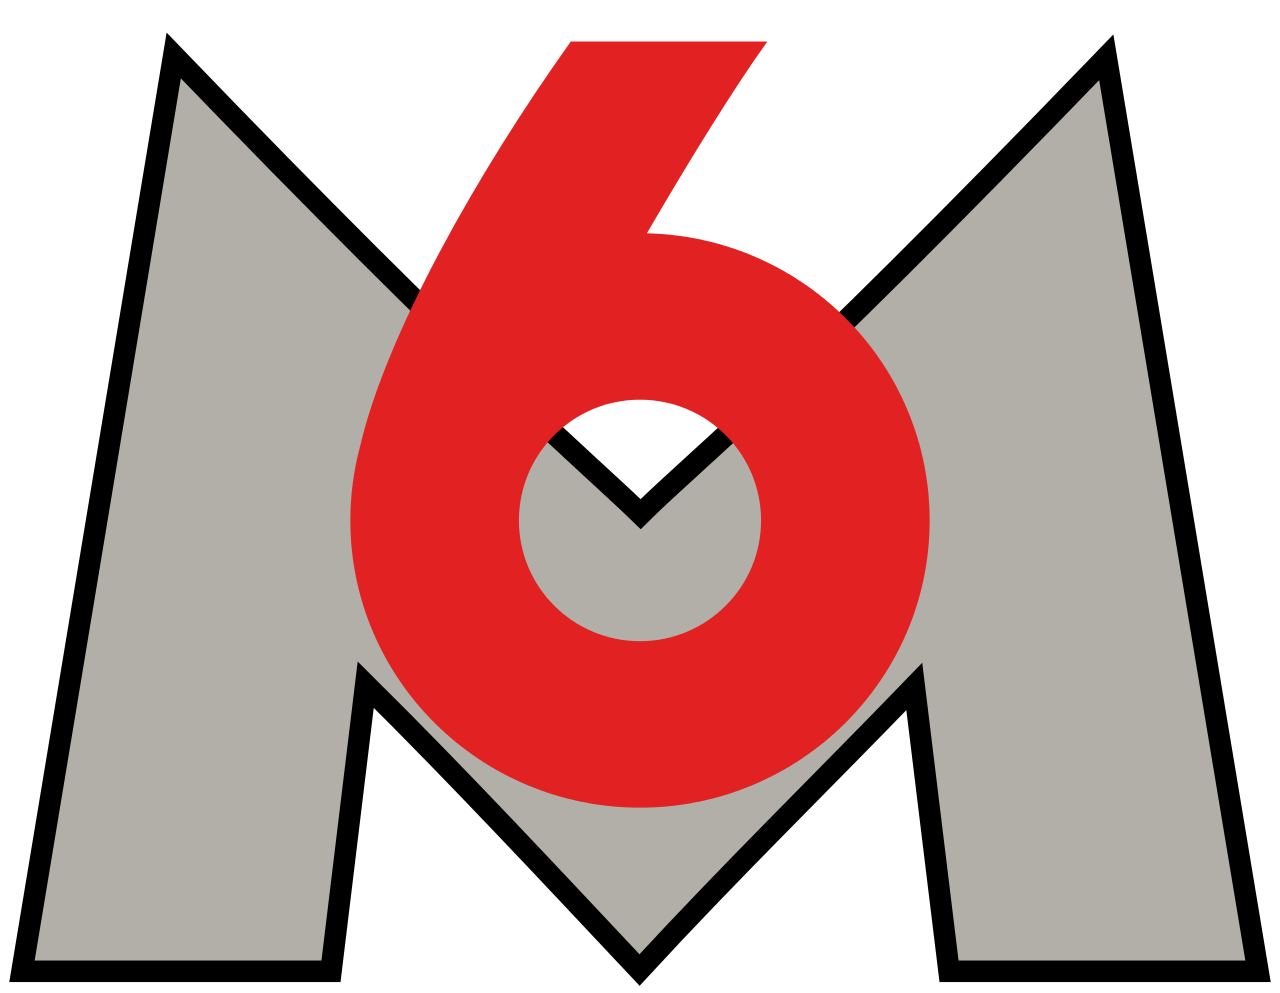  M6  Logos 